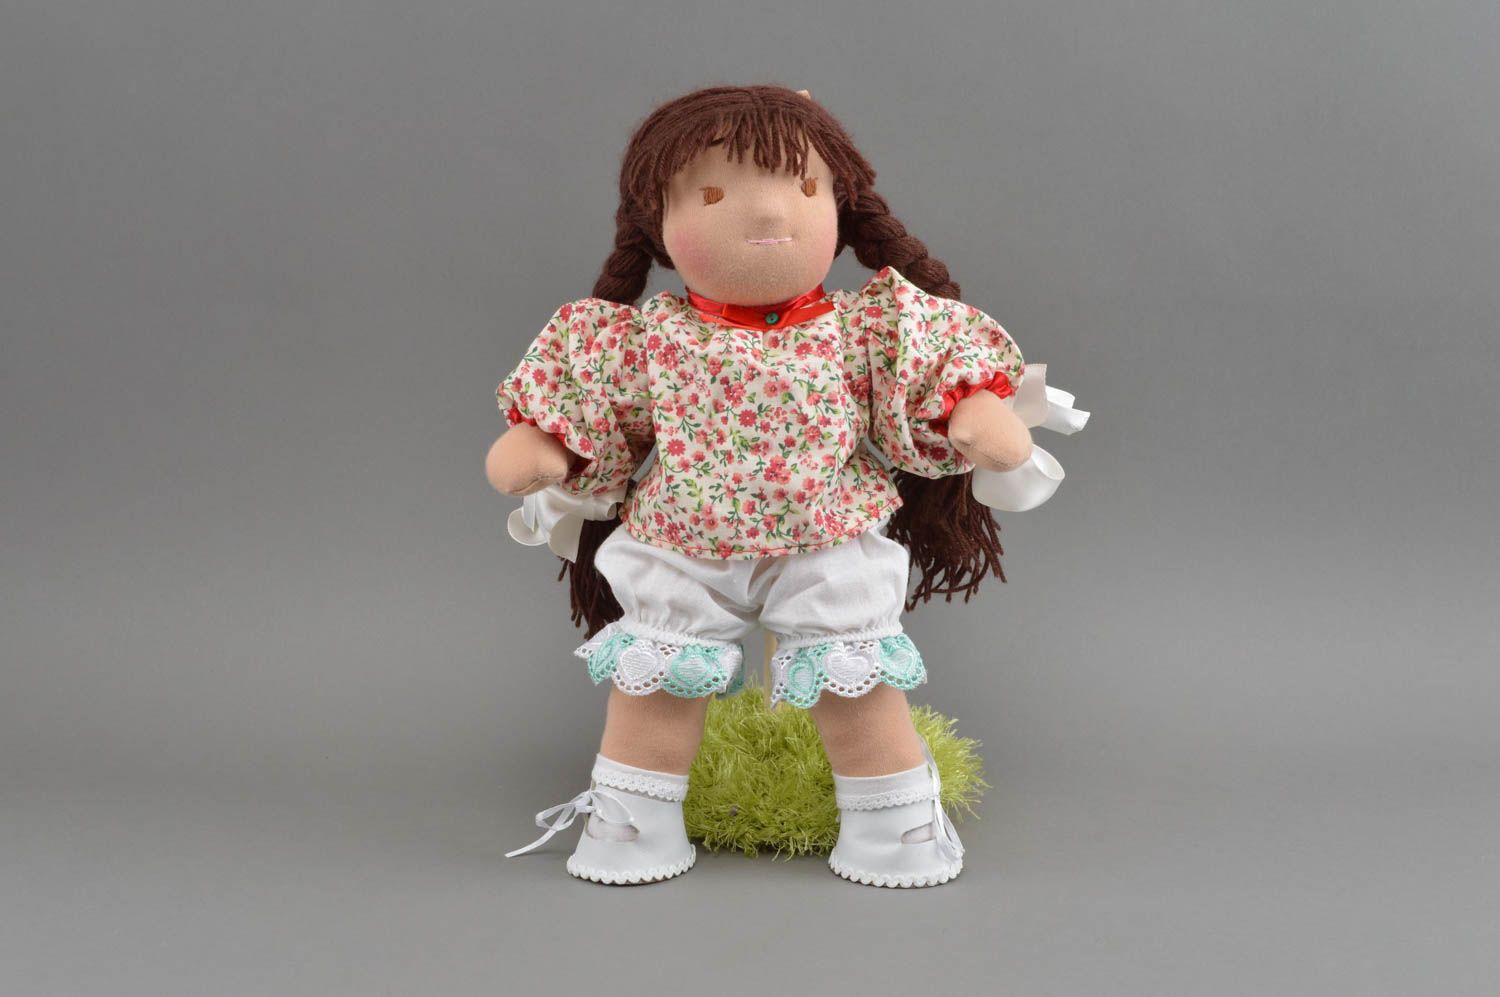 Красивая кофточка для куклы пошитая вручную из хлопка на застежках Цветочек фото 1